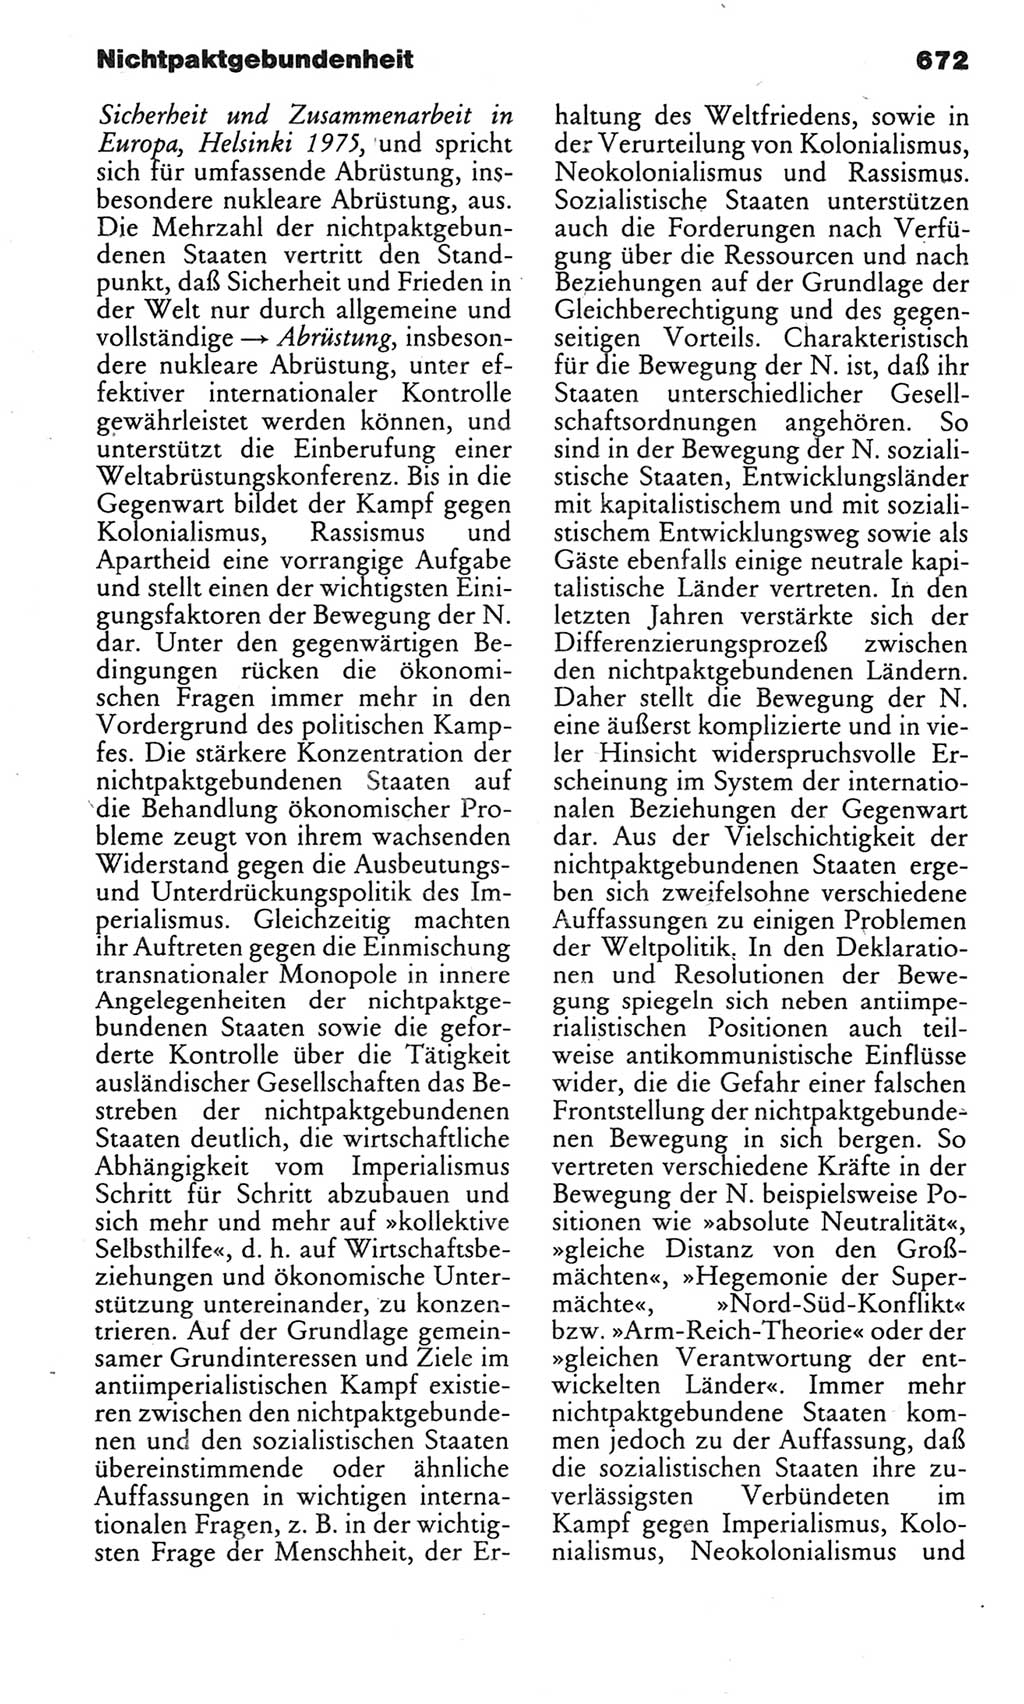 Kleines politisches Wörterbuch [Deutsche Demokratische Republik (DDR)] 1983, Seite 672 (Kl. pol. Wb. DDR 1983, S. 672)